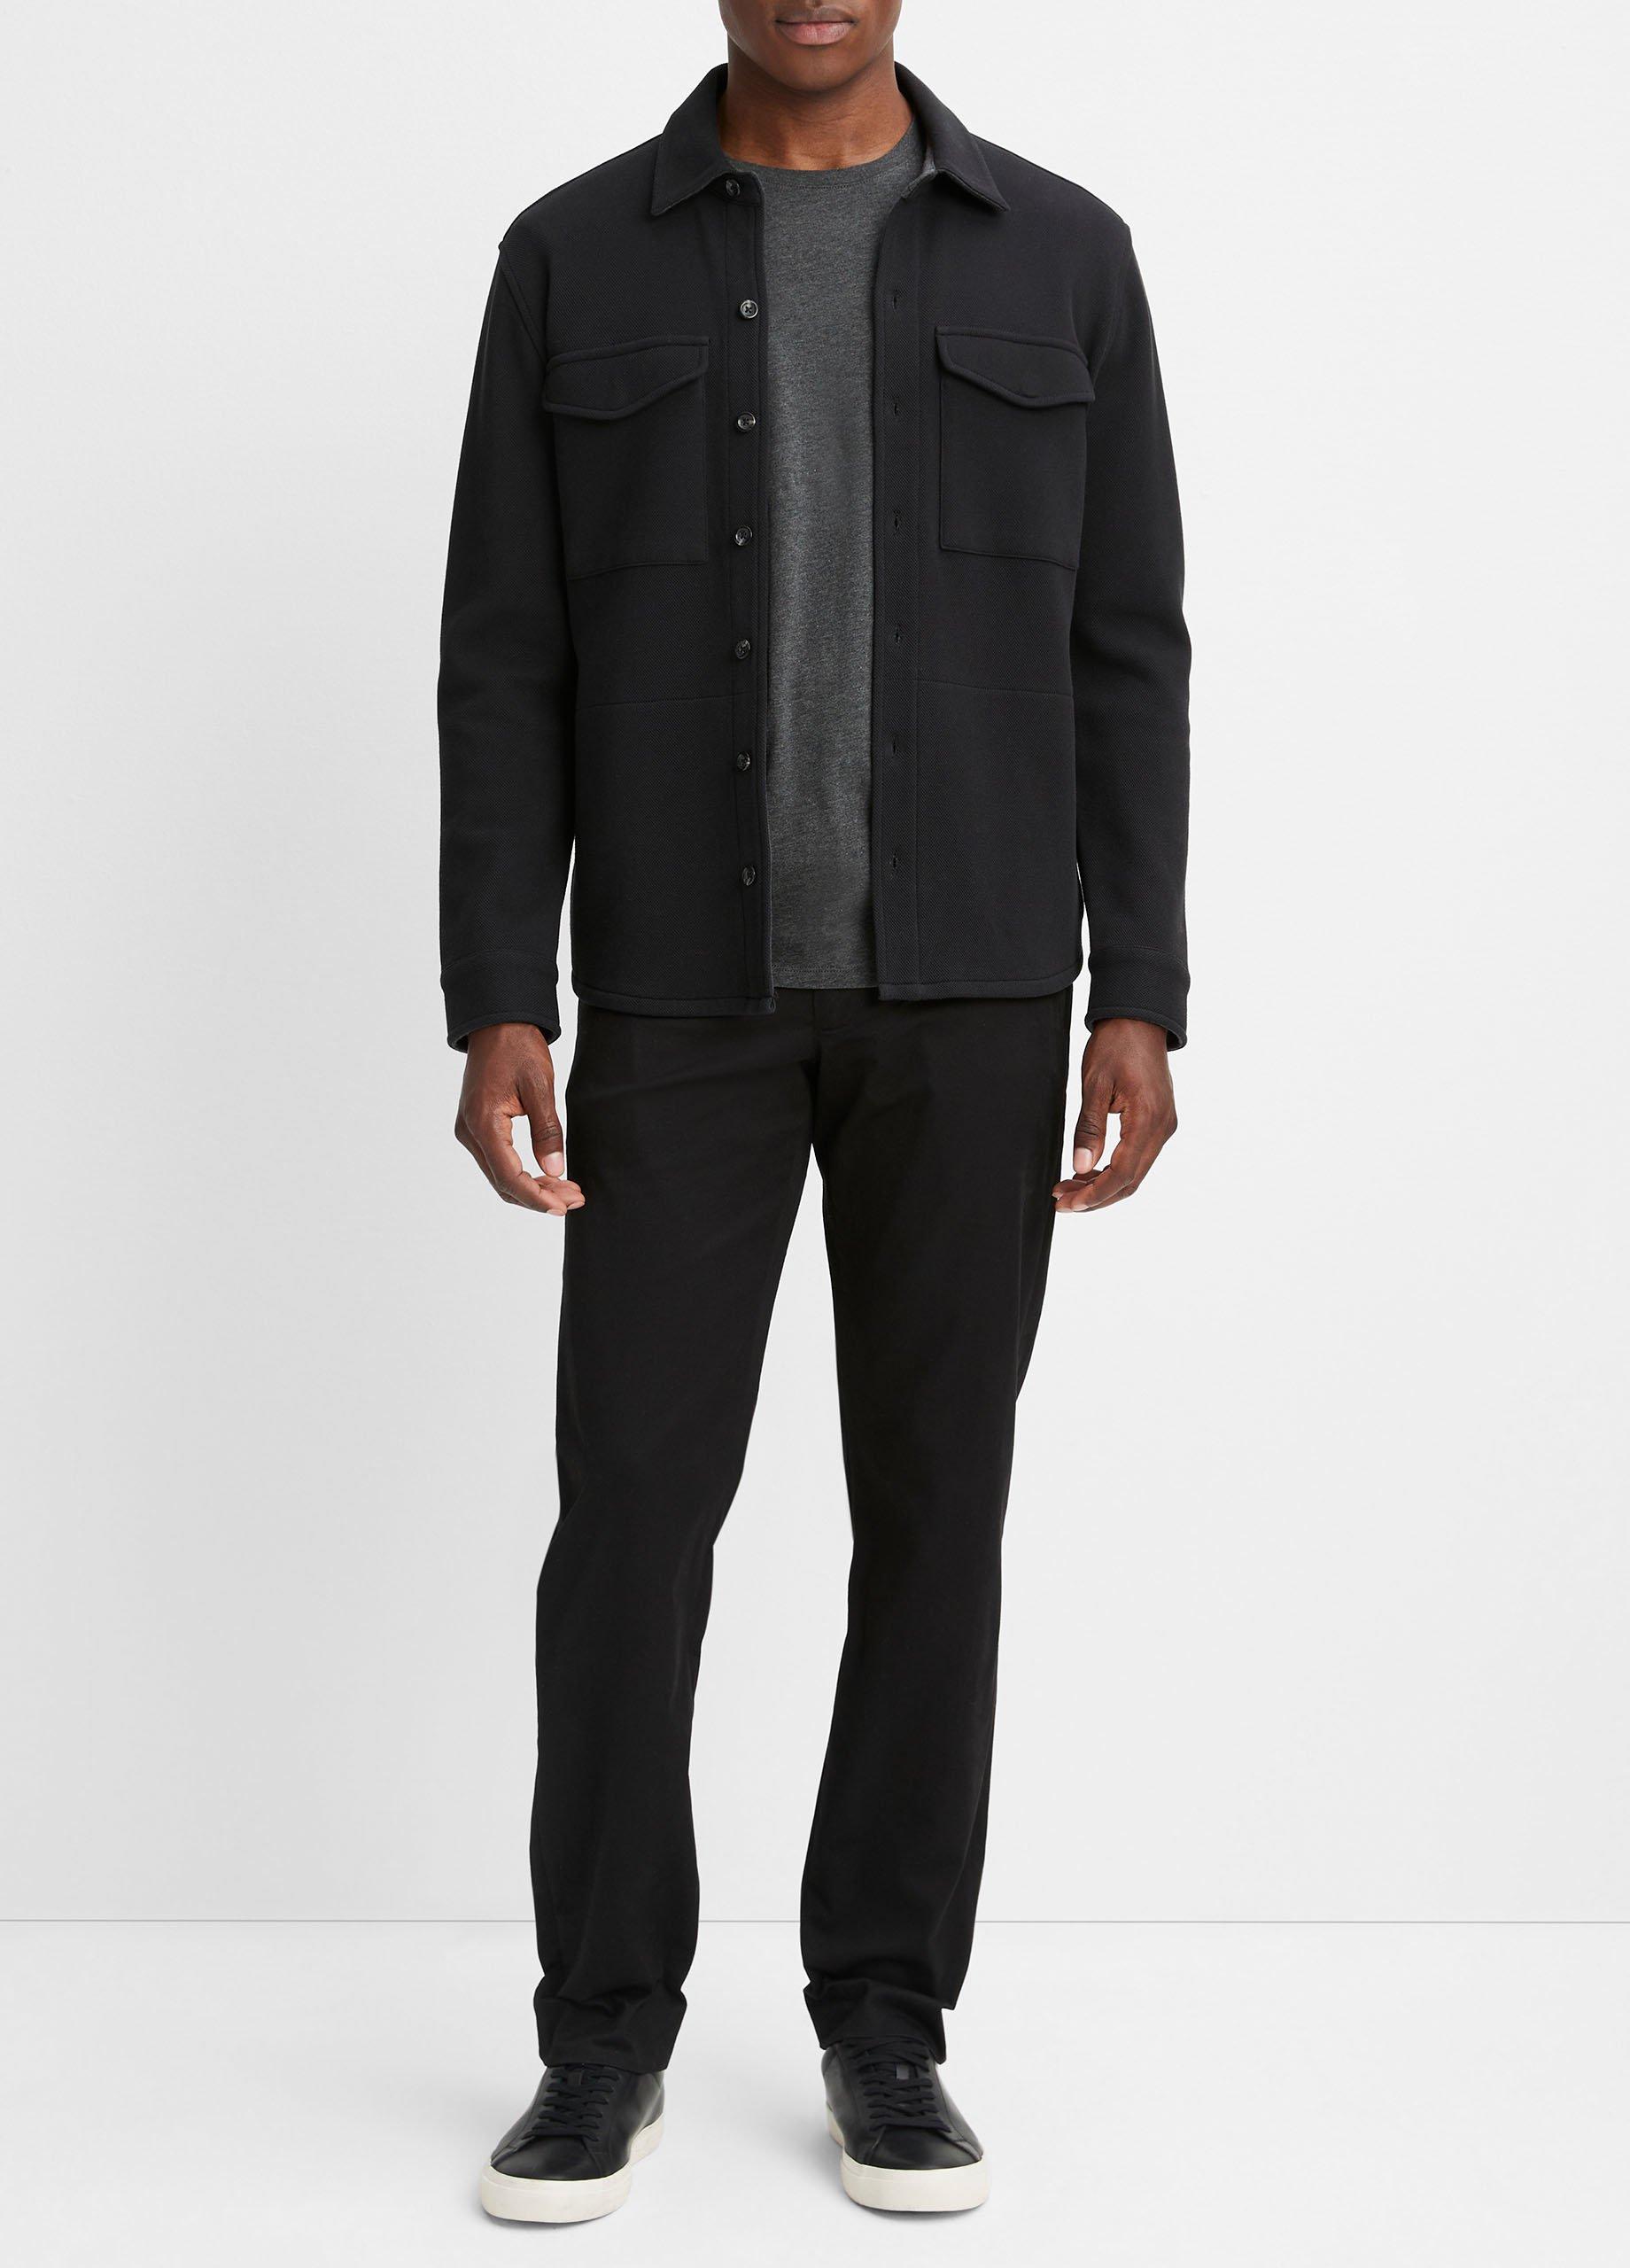 Double-Knit Cotton-Blend Piqué Shirt Jacket, Black/medium Heather Grey, Size S Vince